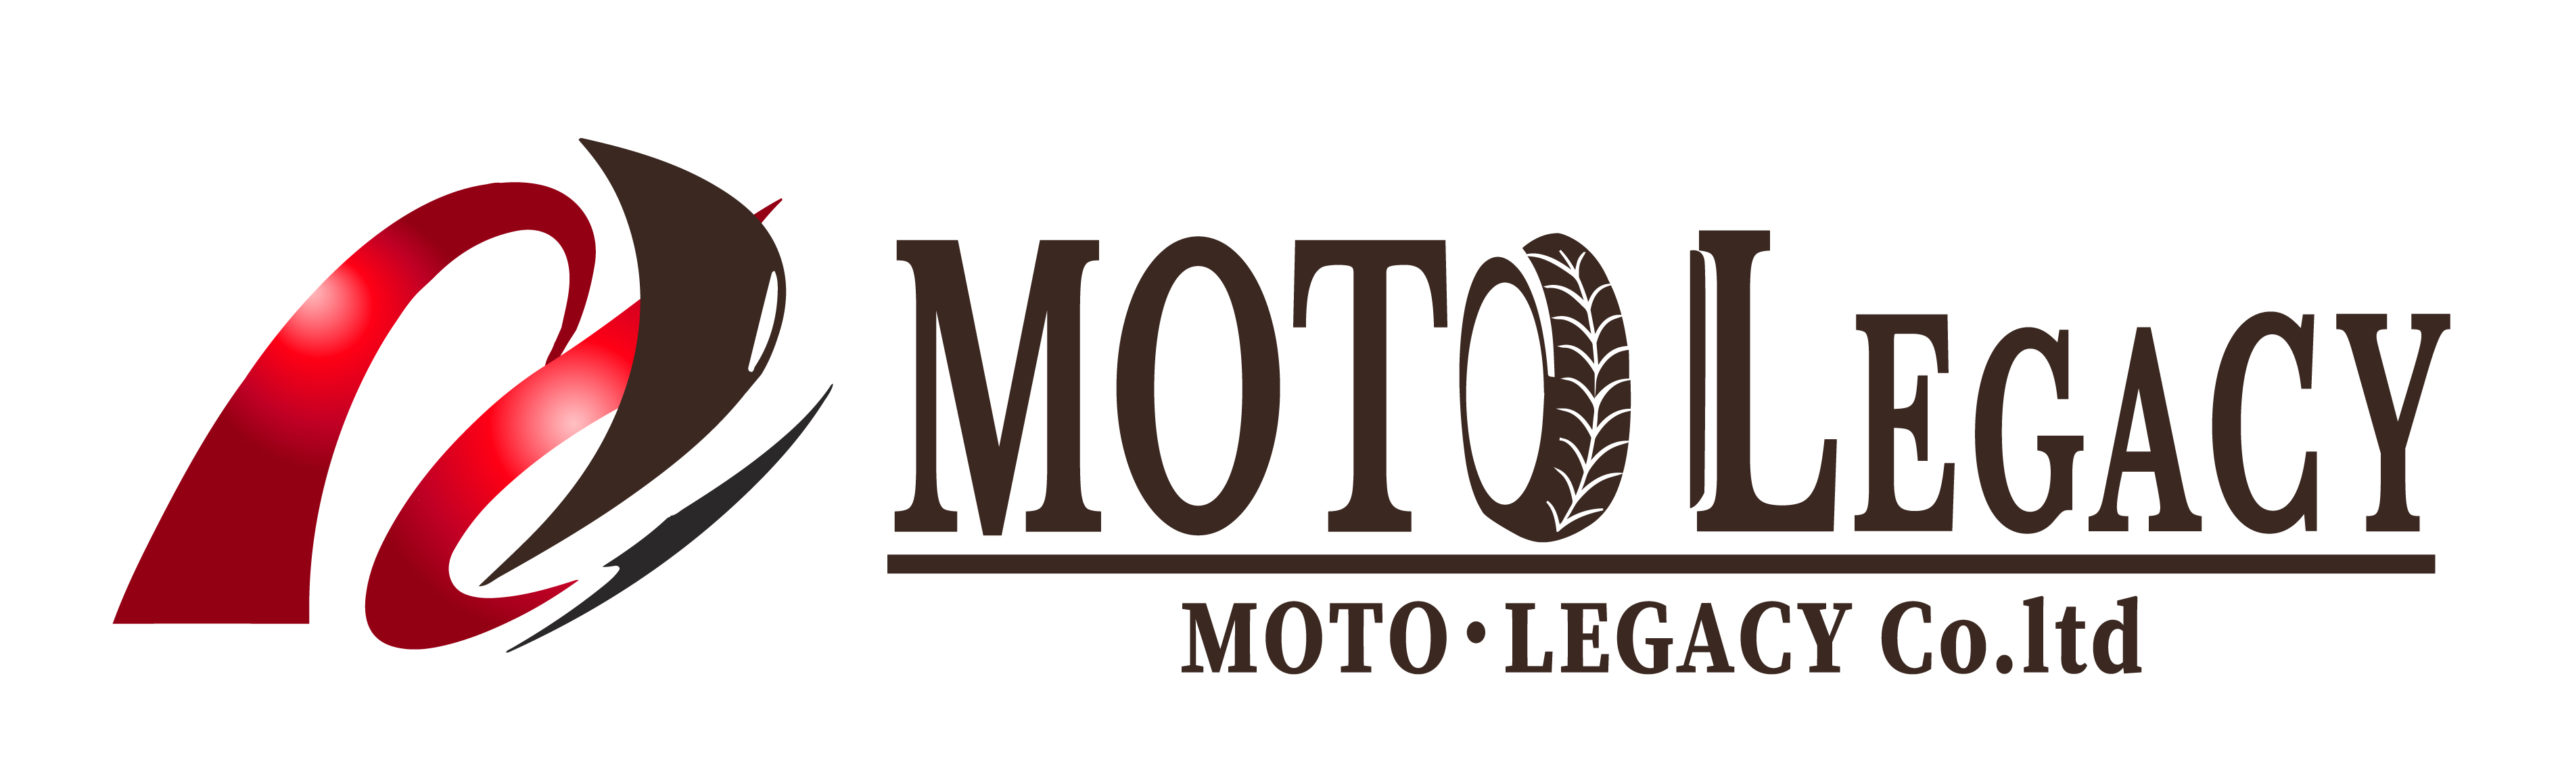 株式会社モトレガシー.MOTO Legacy